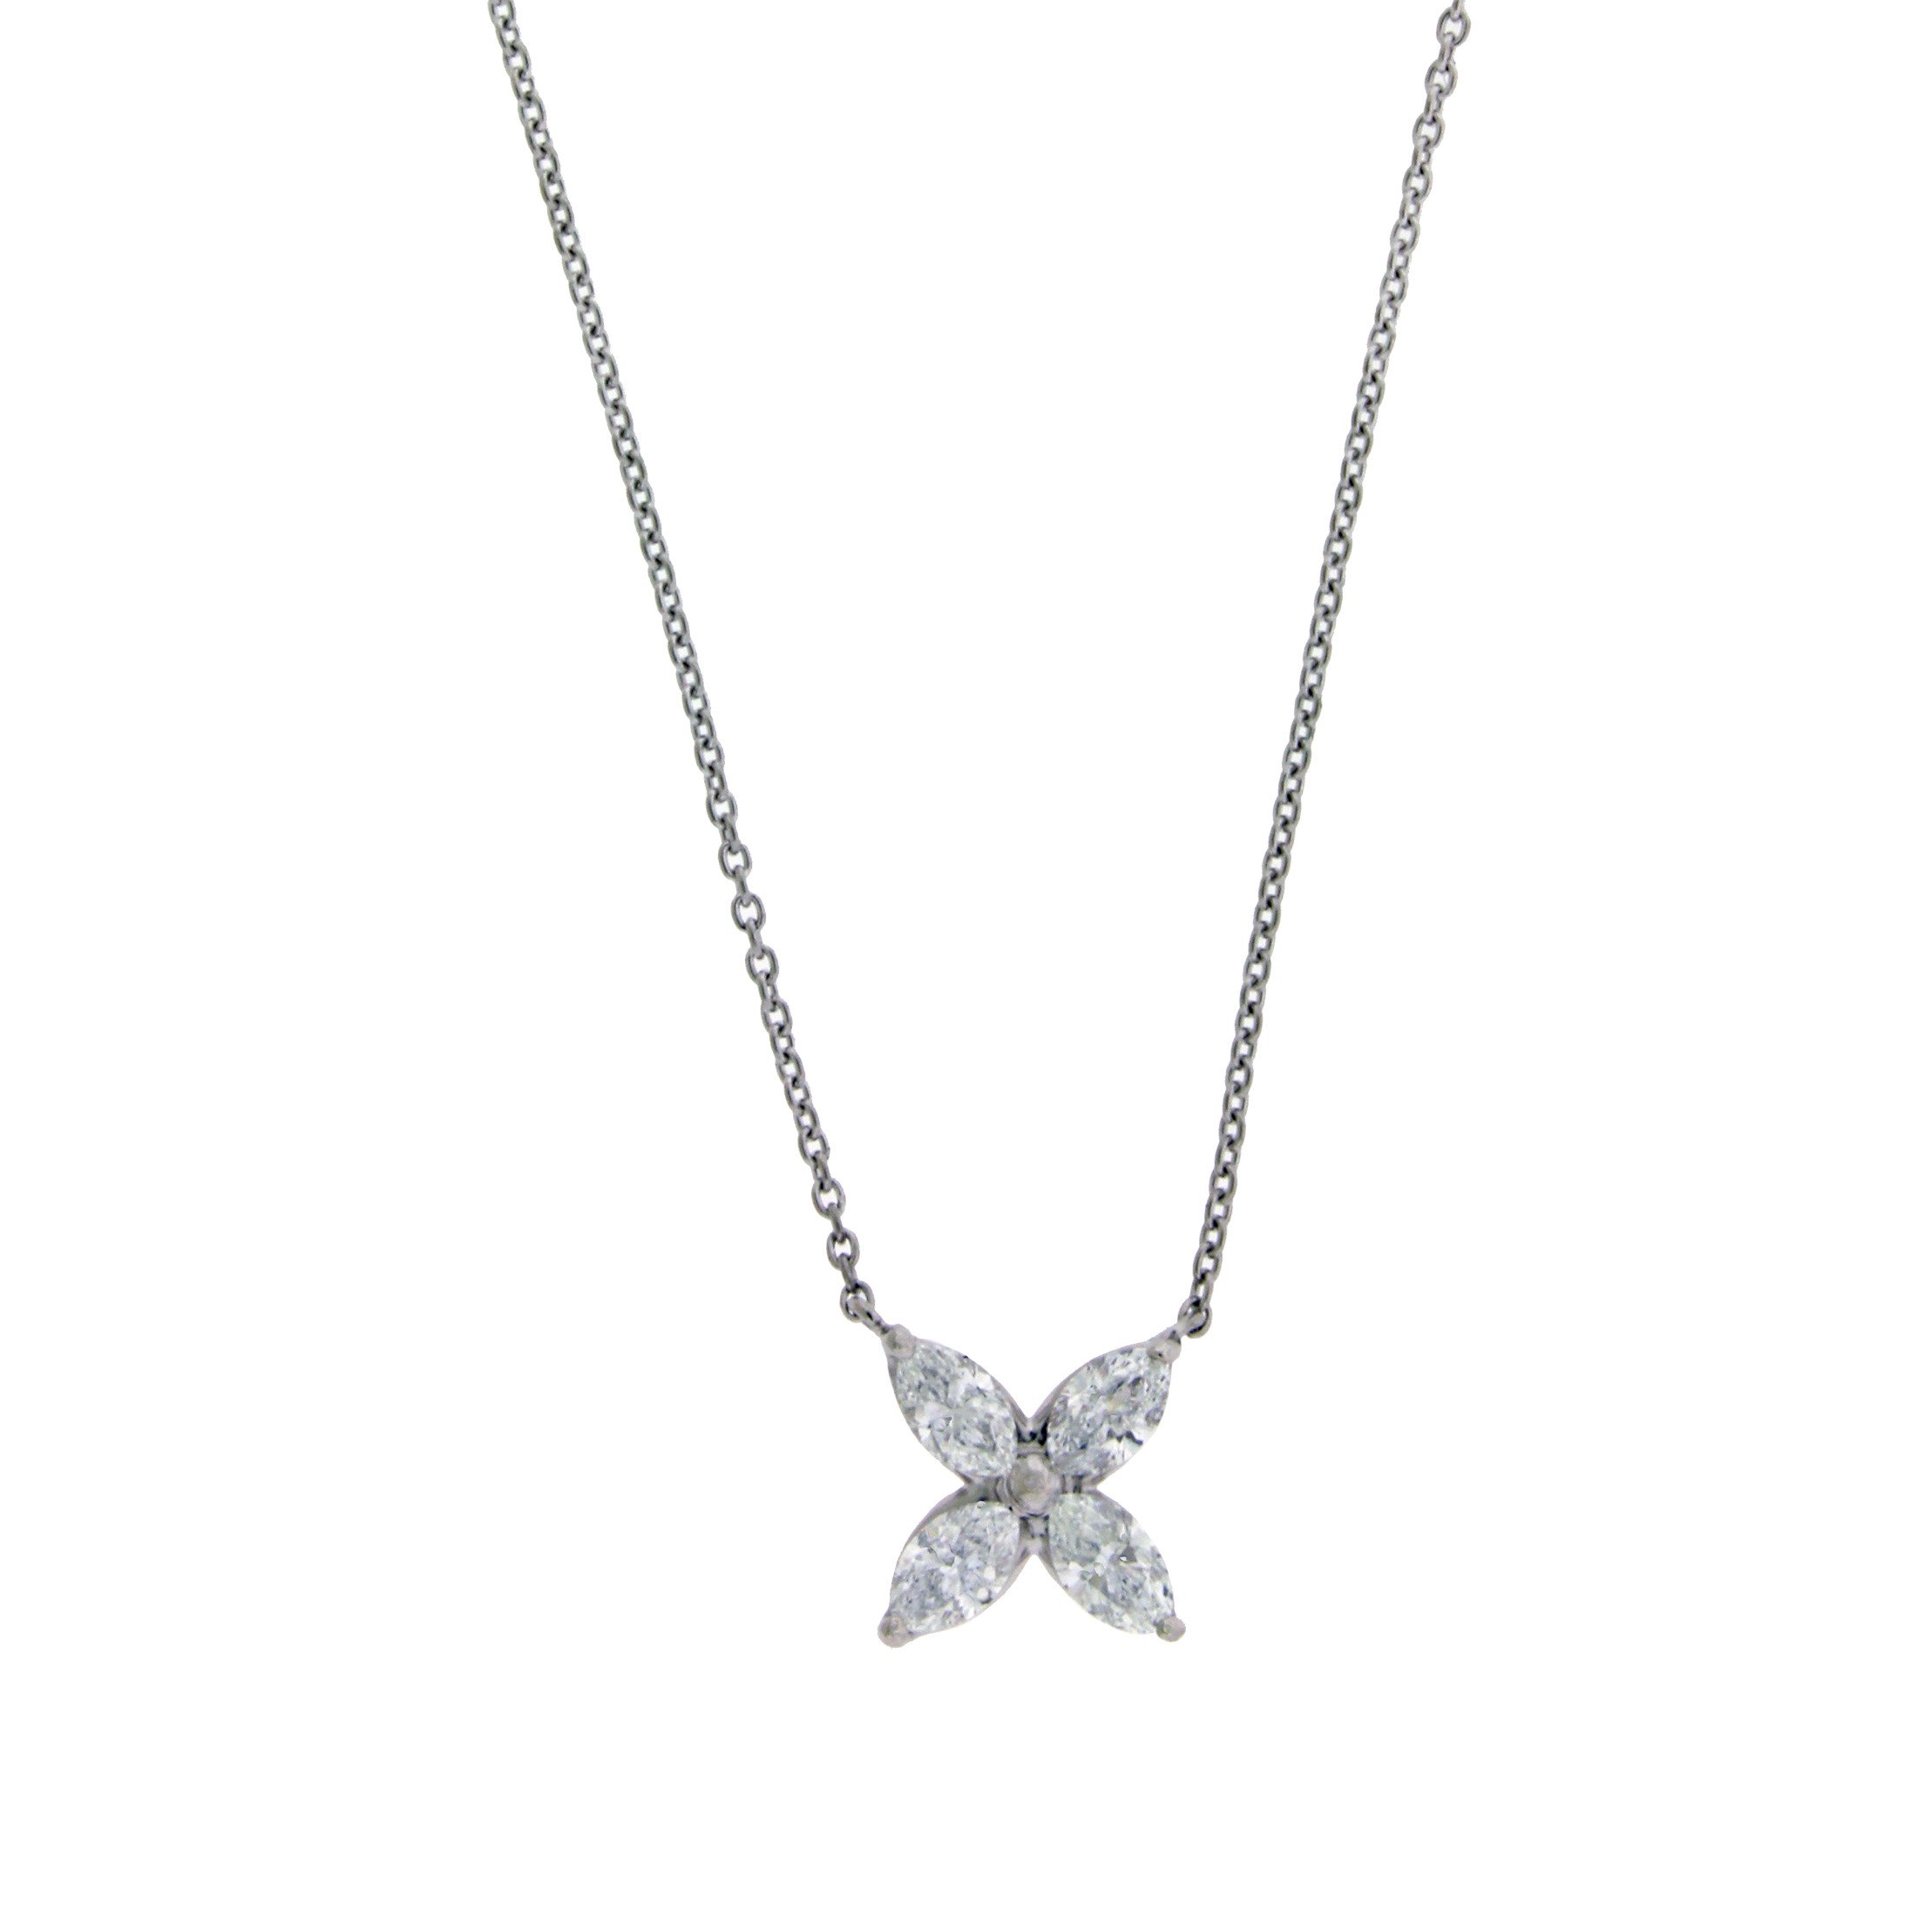 tiffany victoria necklace medium